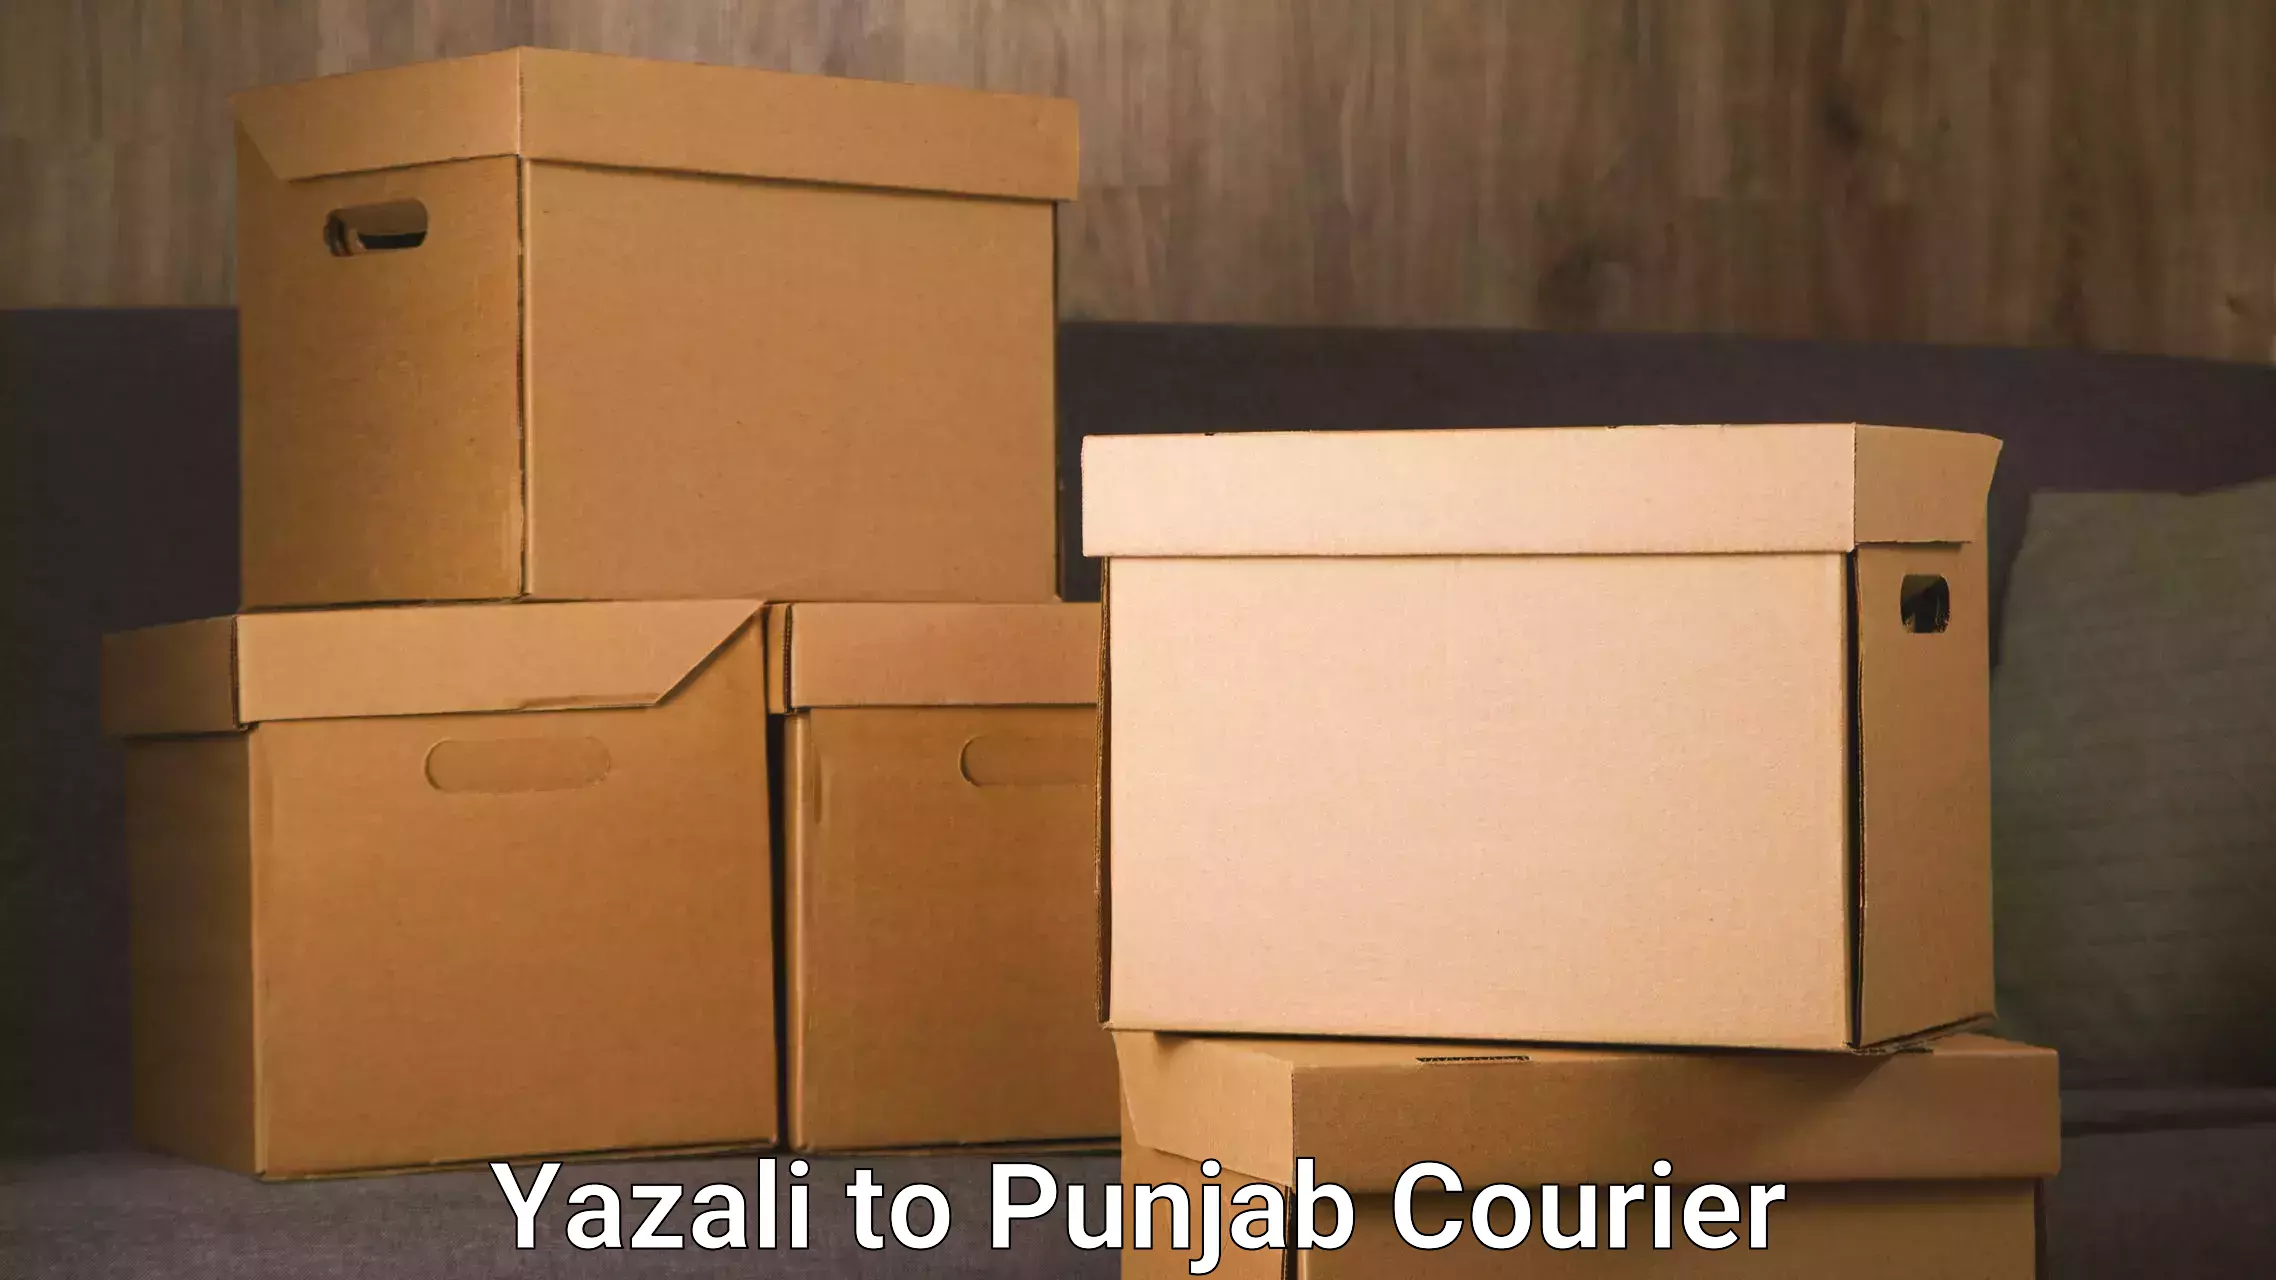 24-hour courier service Yazali to Central University of Punjab Bathinda